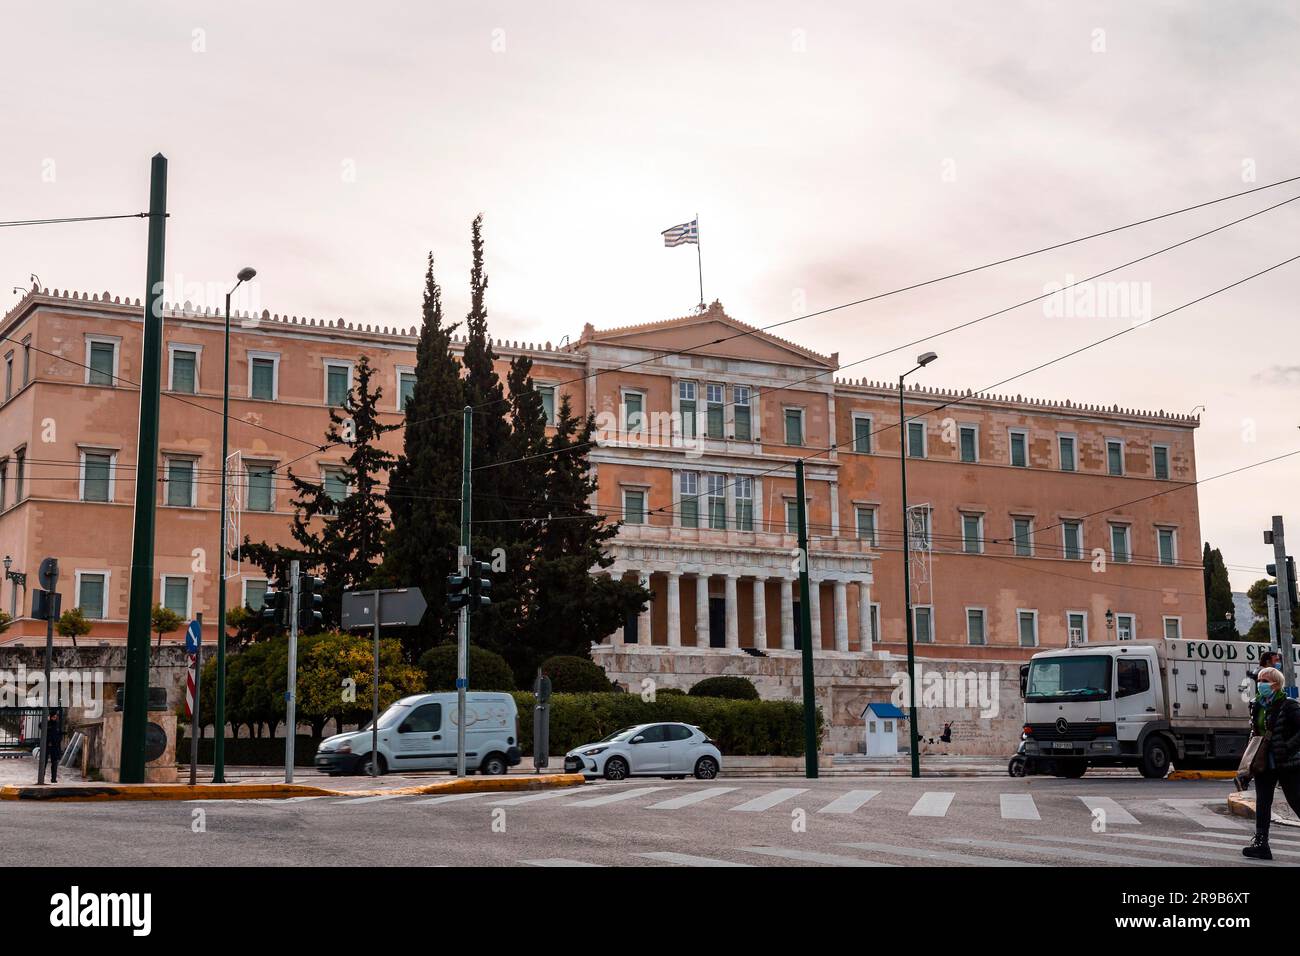 Athènes, Grèce - 27 novembre 2021 : façade du bâtiment du Parlement hellénique sur la place Syntagma à Athènes, la capitale grecque. Banque D'Images